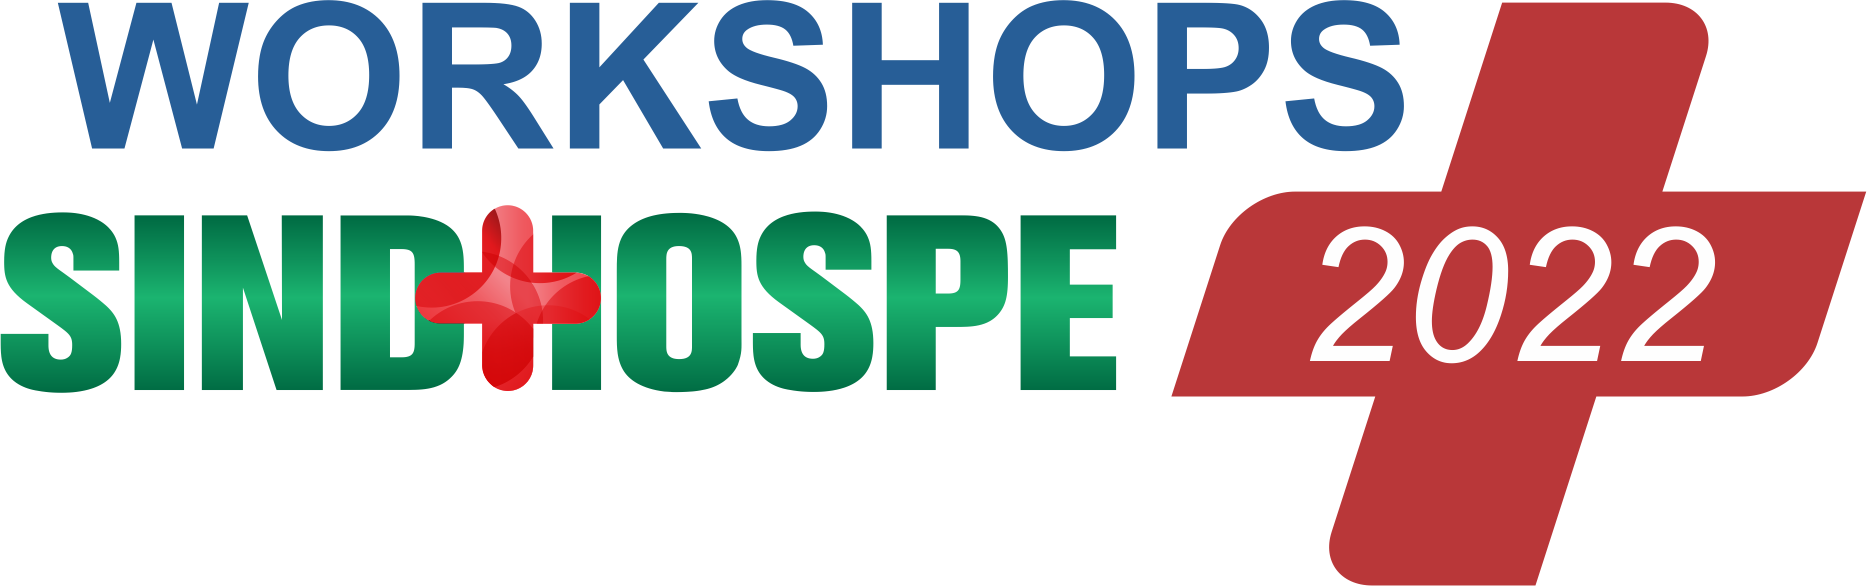 Workshops Sindhospe 2022